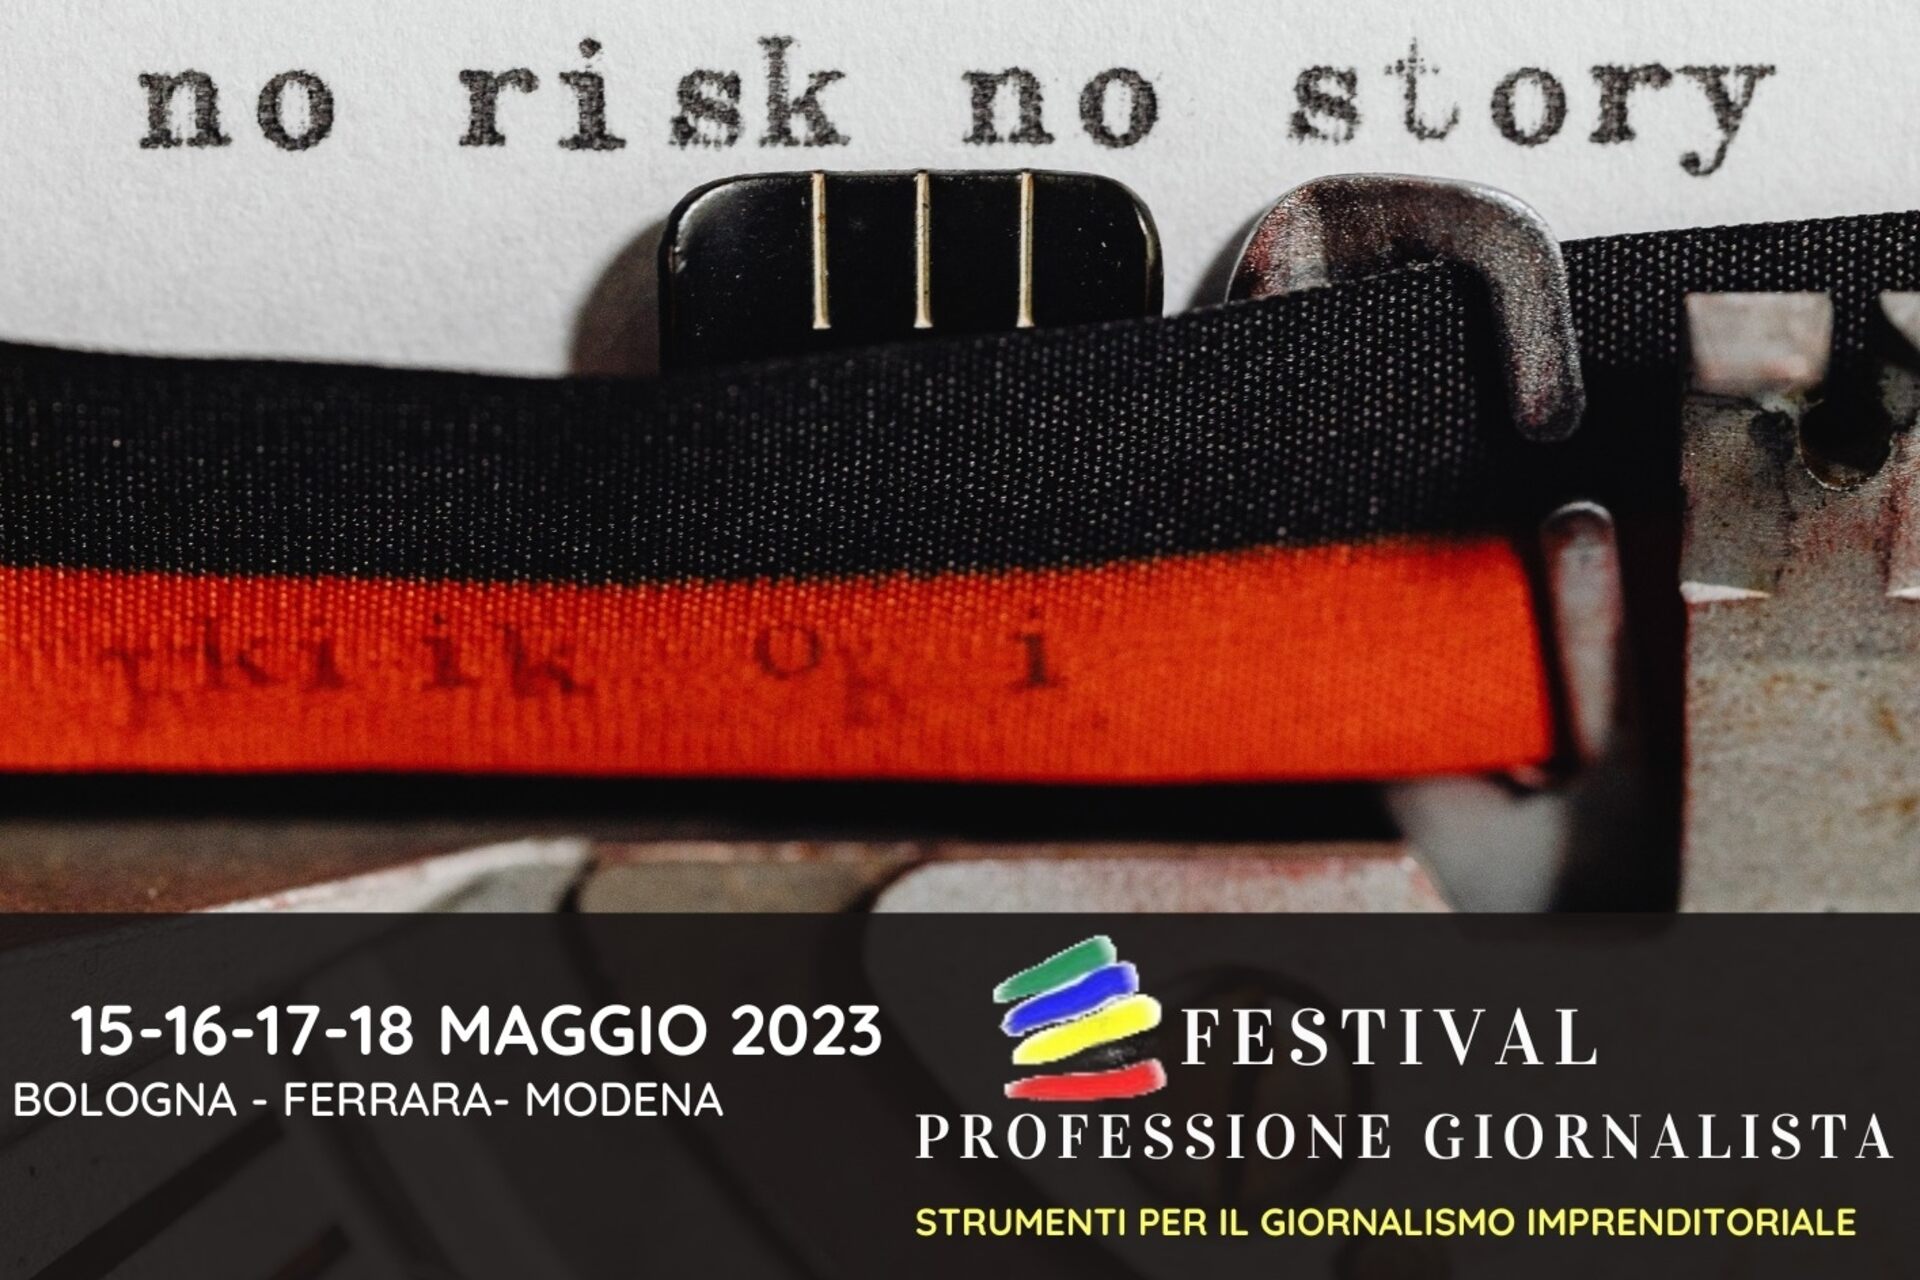 Žurnālista profesija: 2023. gada festivāla "Professione Giornalista" galvenais vizuālais attēls (Boloņa, Ferāra, Modena, 15.-16.-17.-18. maijs)